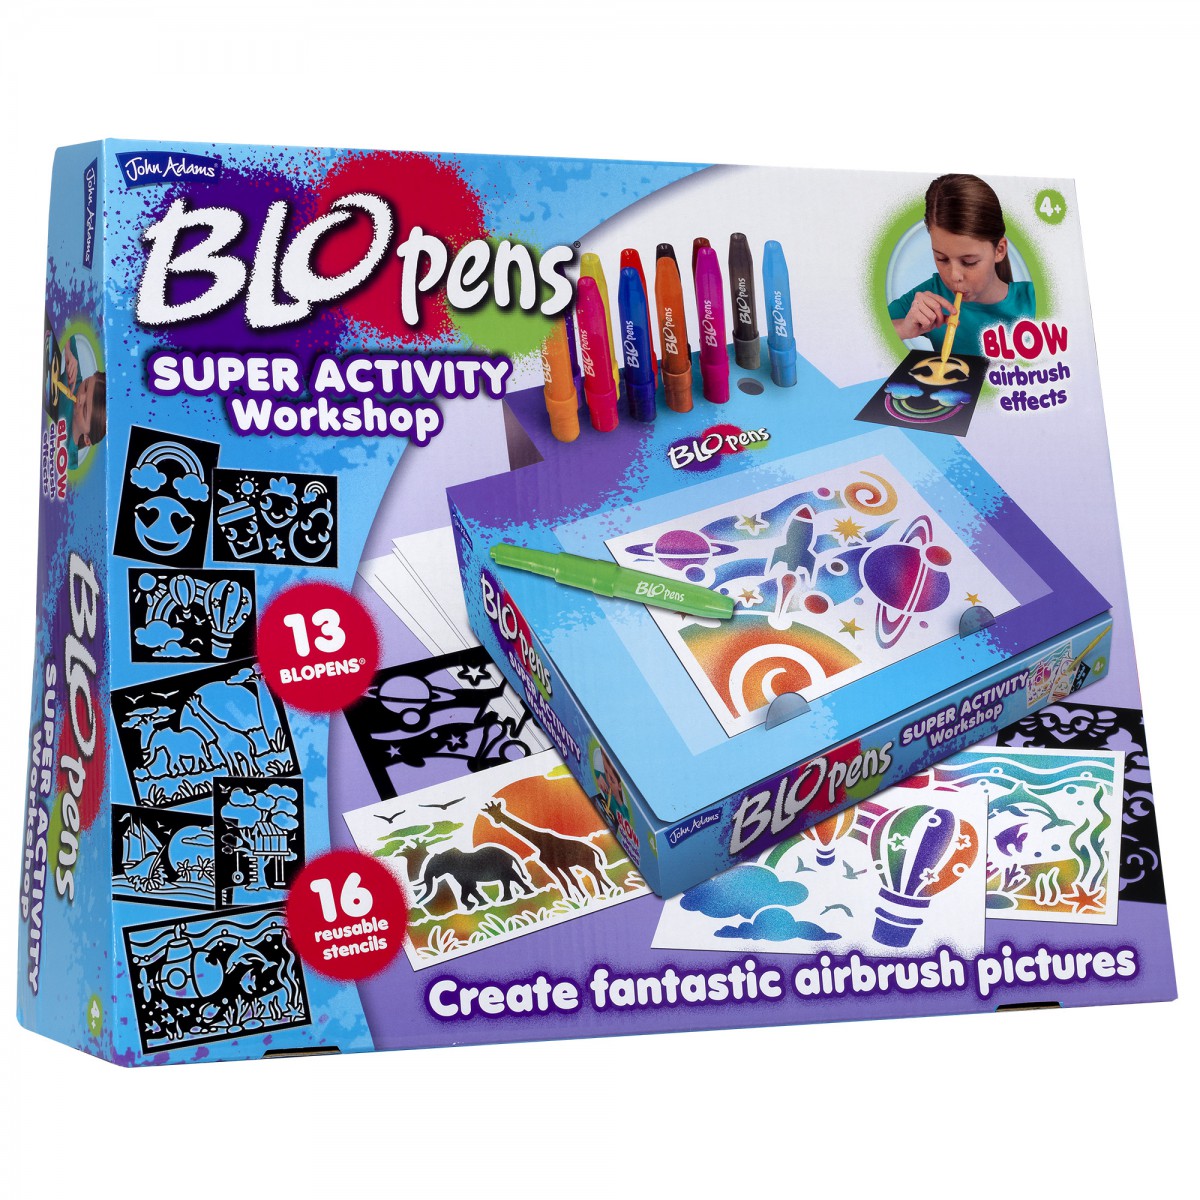 BLOpens Super Activity Workshop at Toys R Us UK